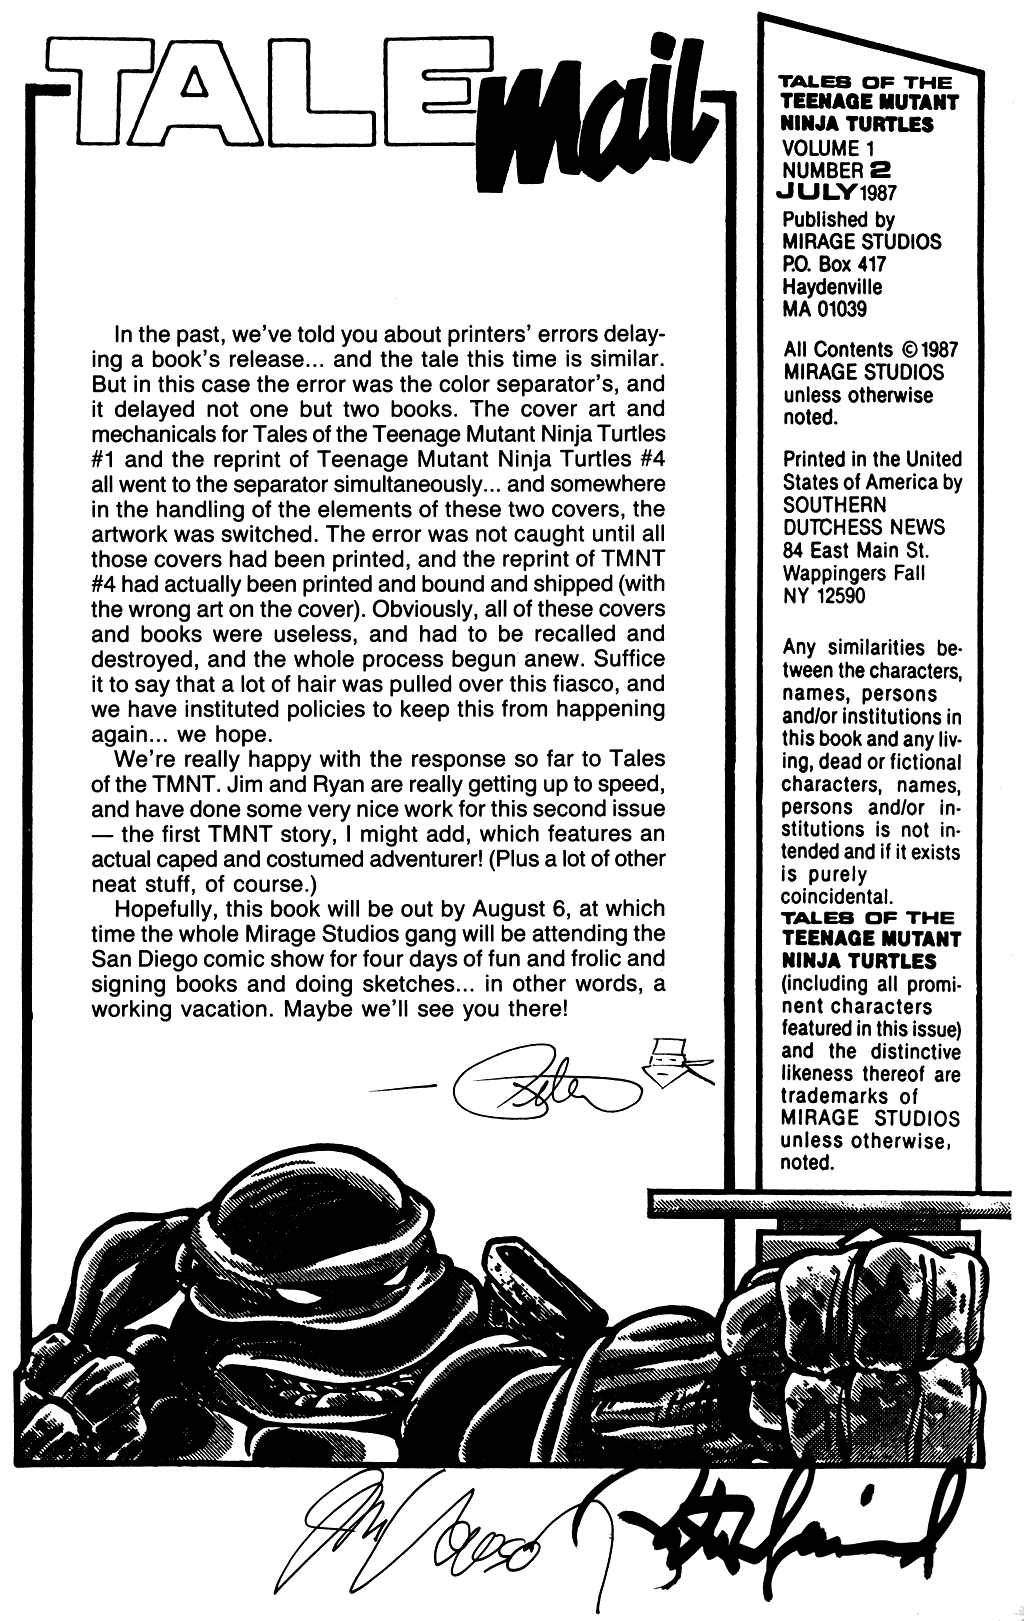 Read online Tales of the Teenage Mutant Ninja Turtles comic -  Issue #2 - 2